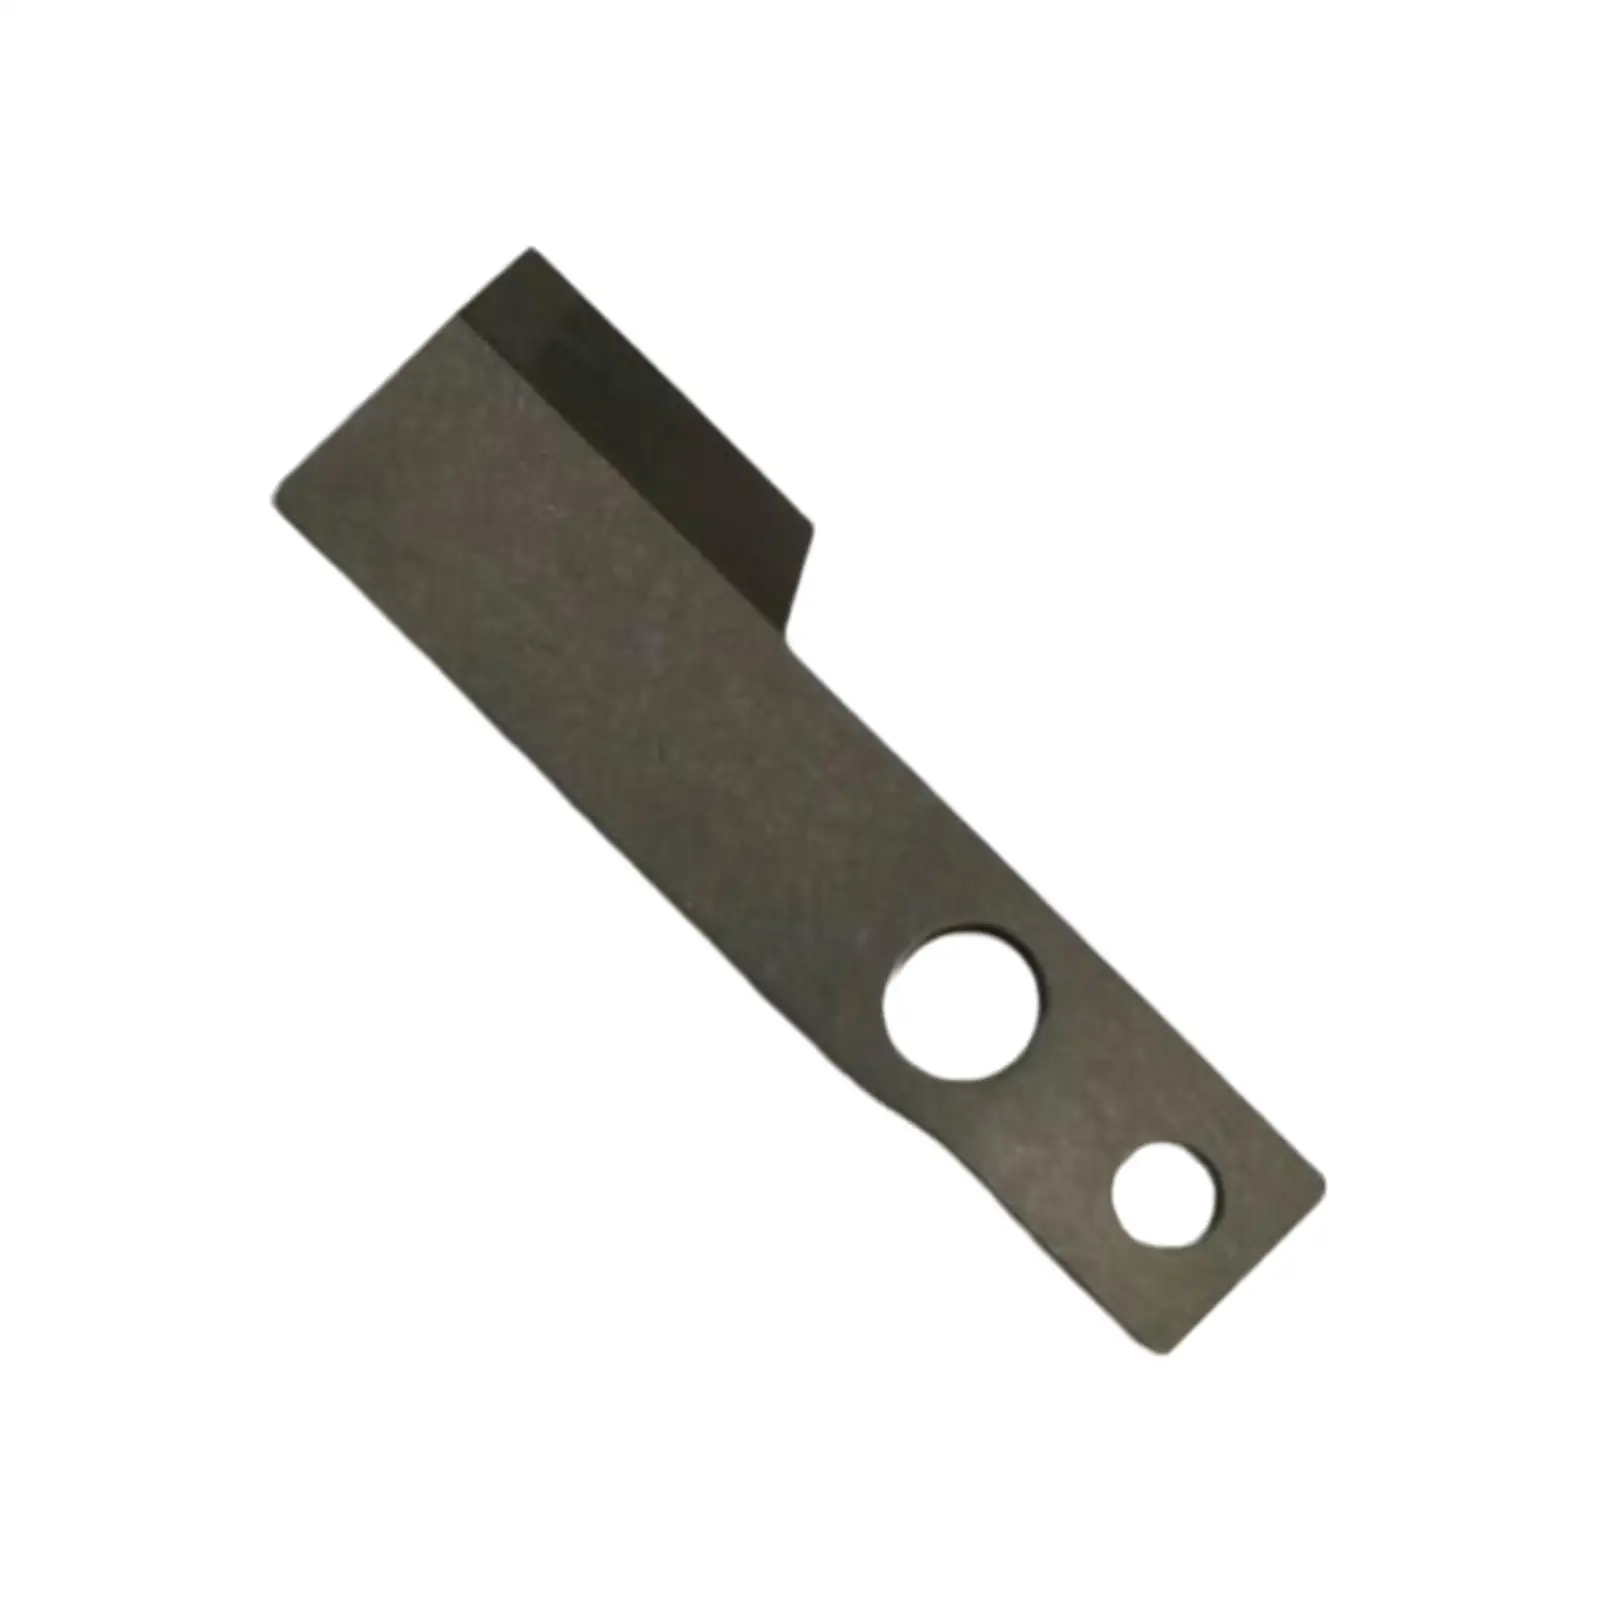 Lower Carbide Blade Replacement Sturdy Steel Serger Overlocker Machine Blade